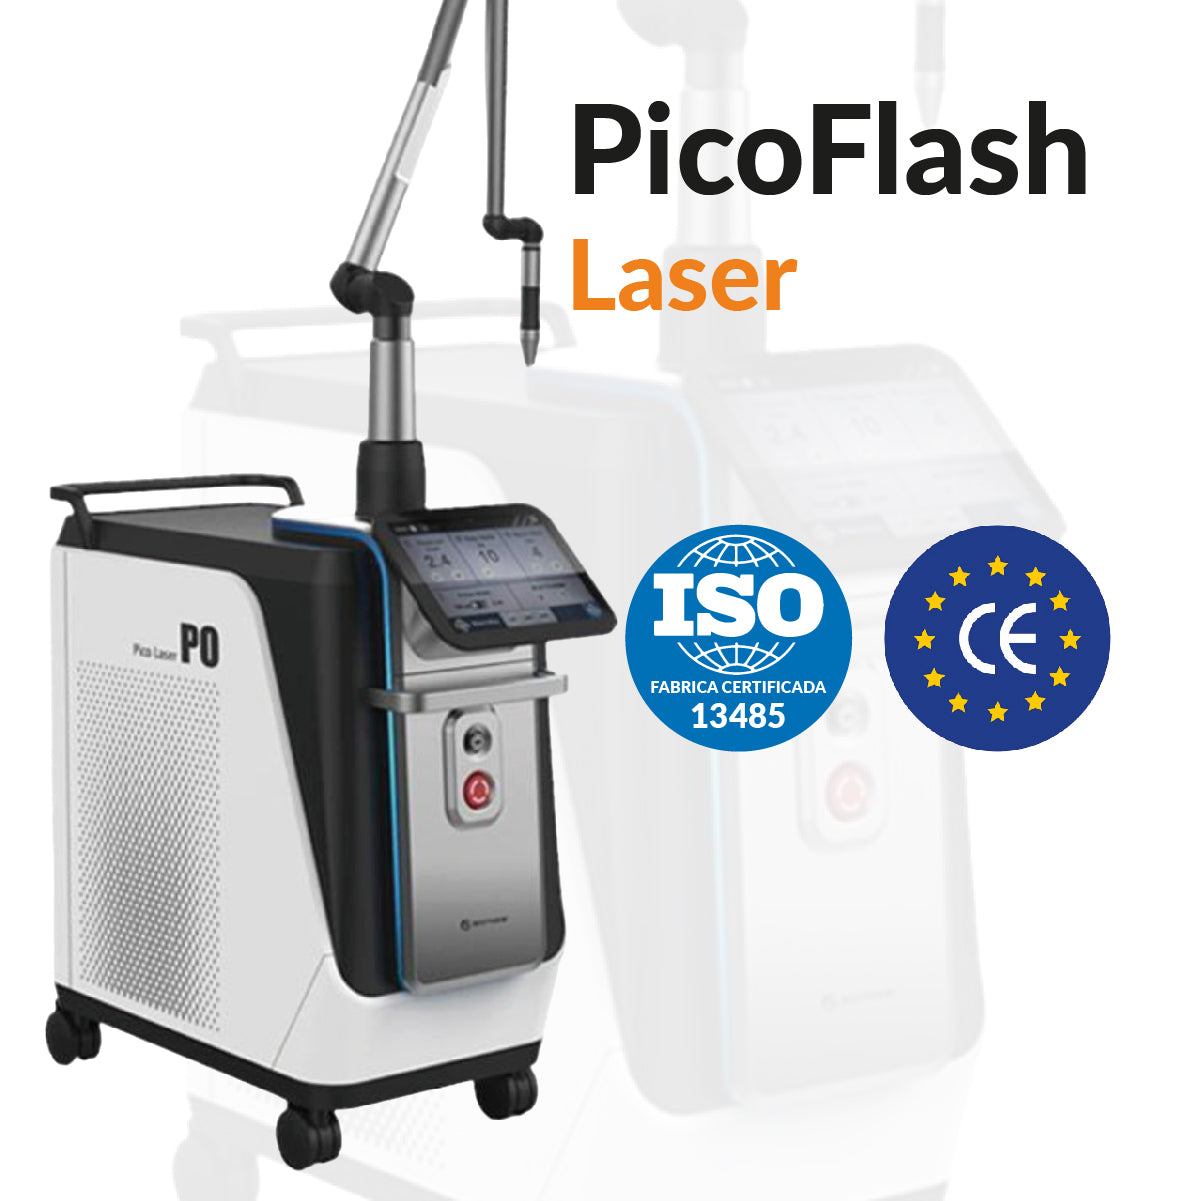 PicoFlash Laser